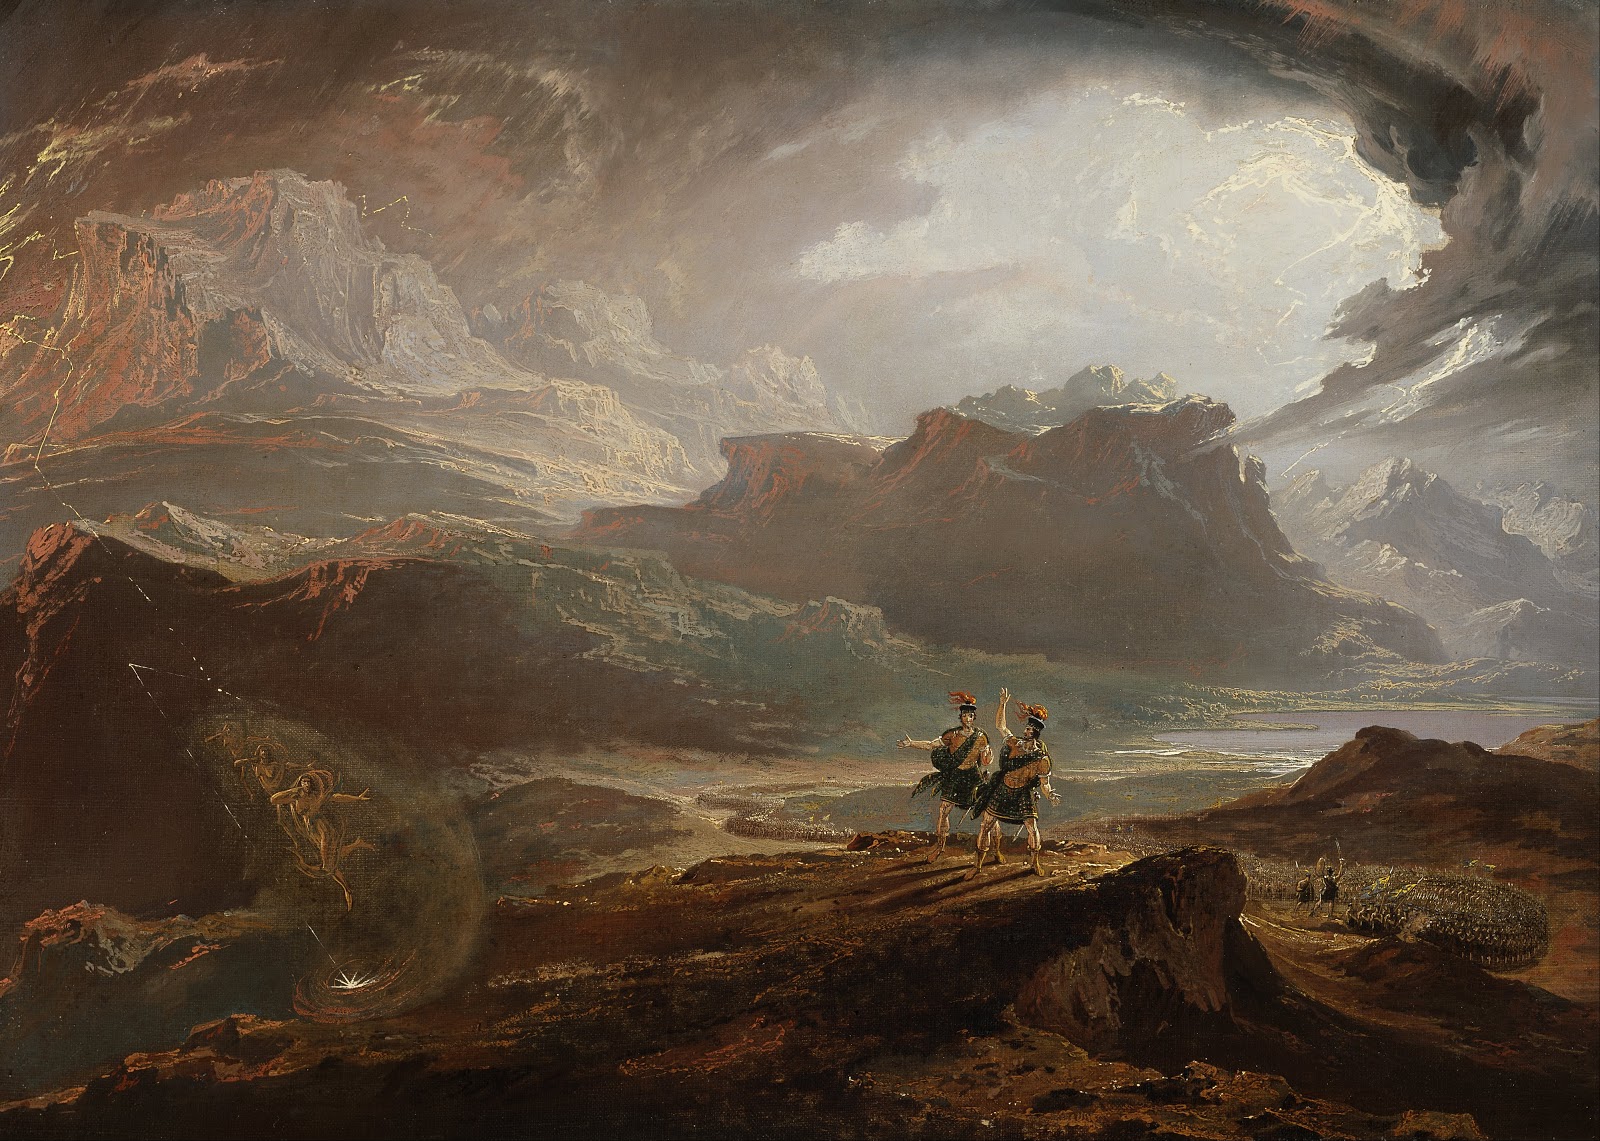 John+Martin+Landscape-1789-1854 (45).jpg